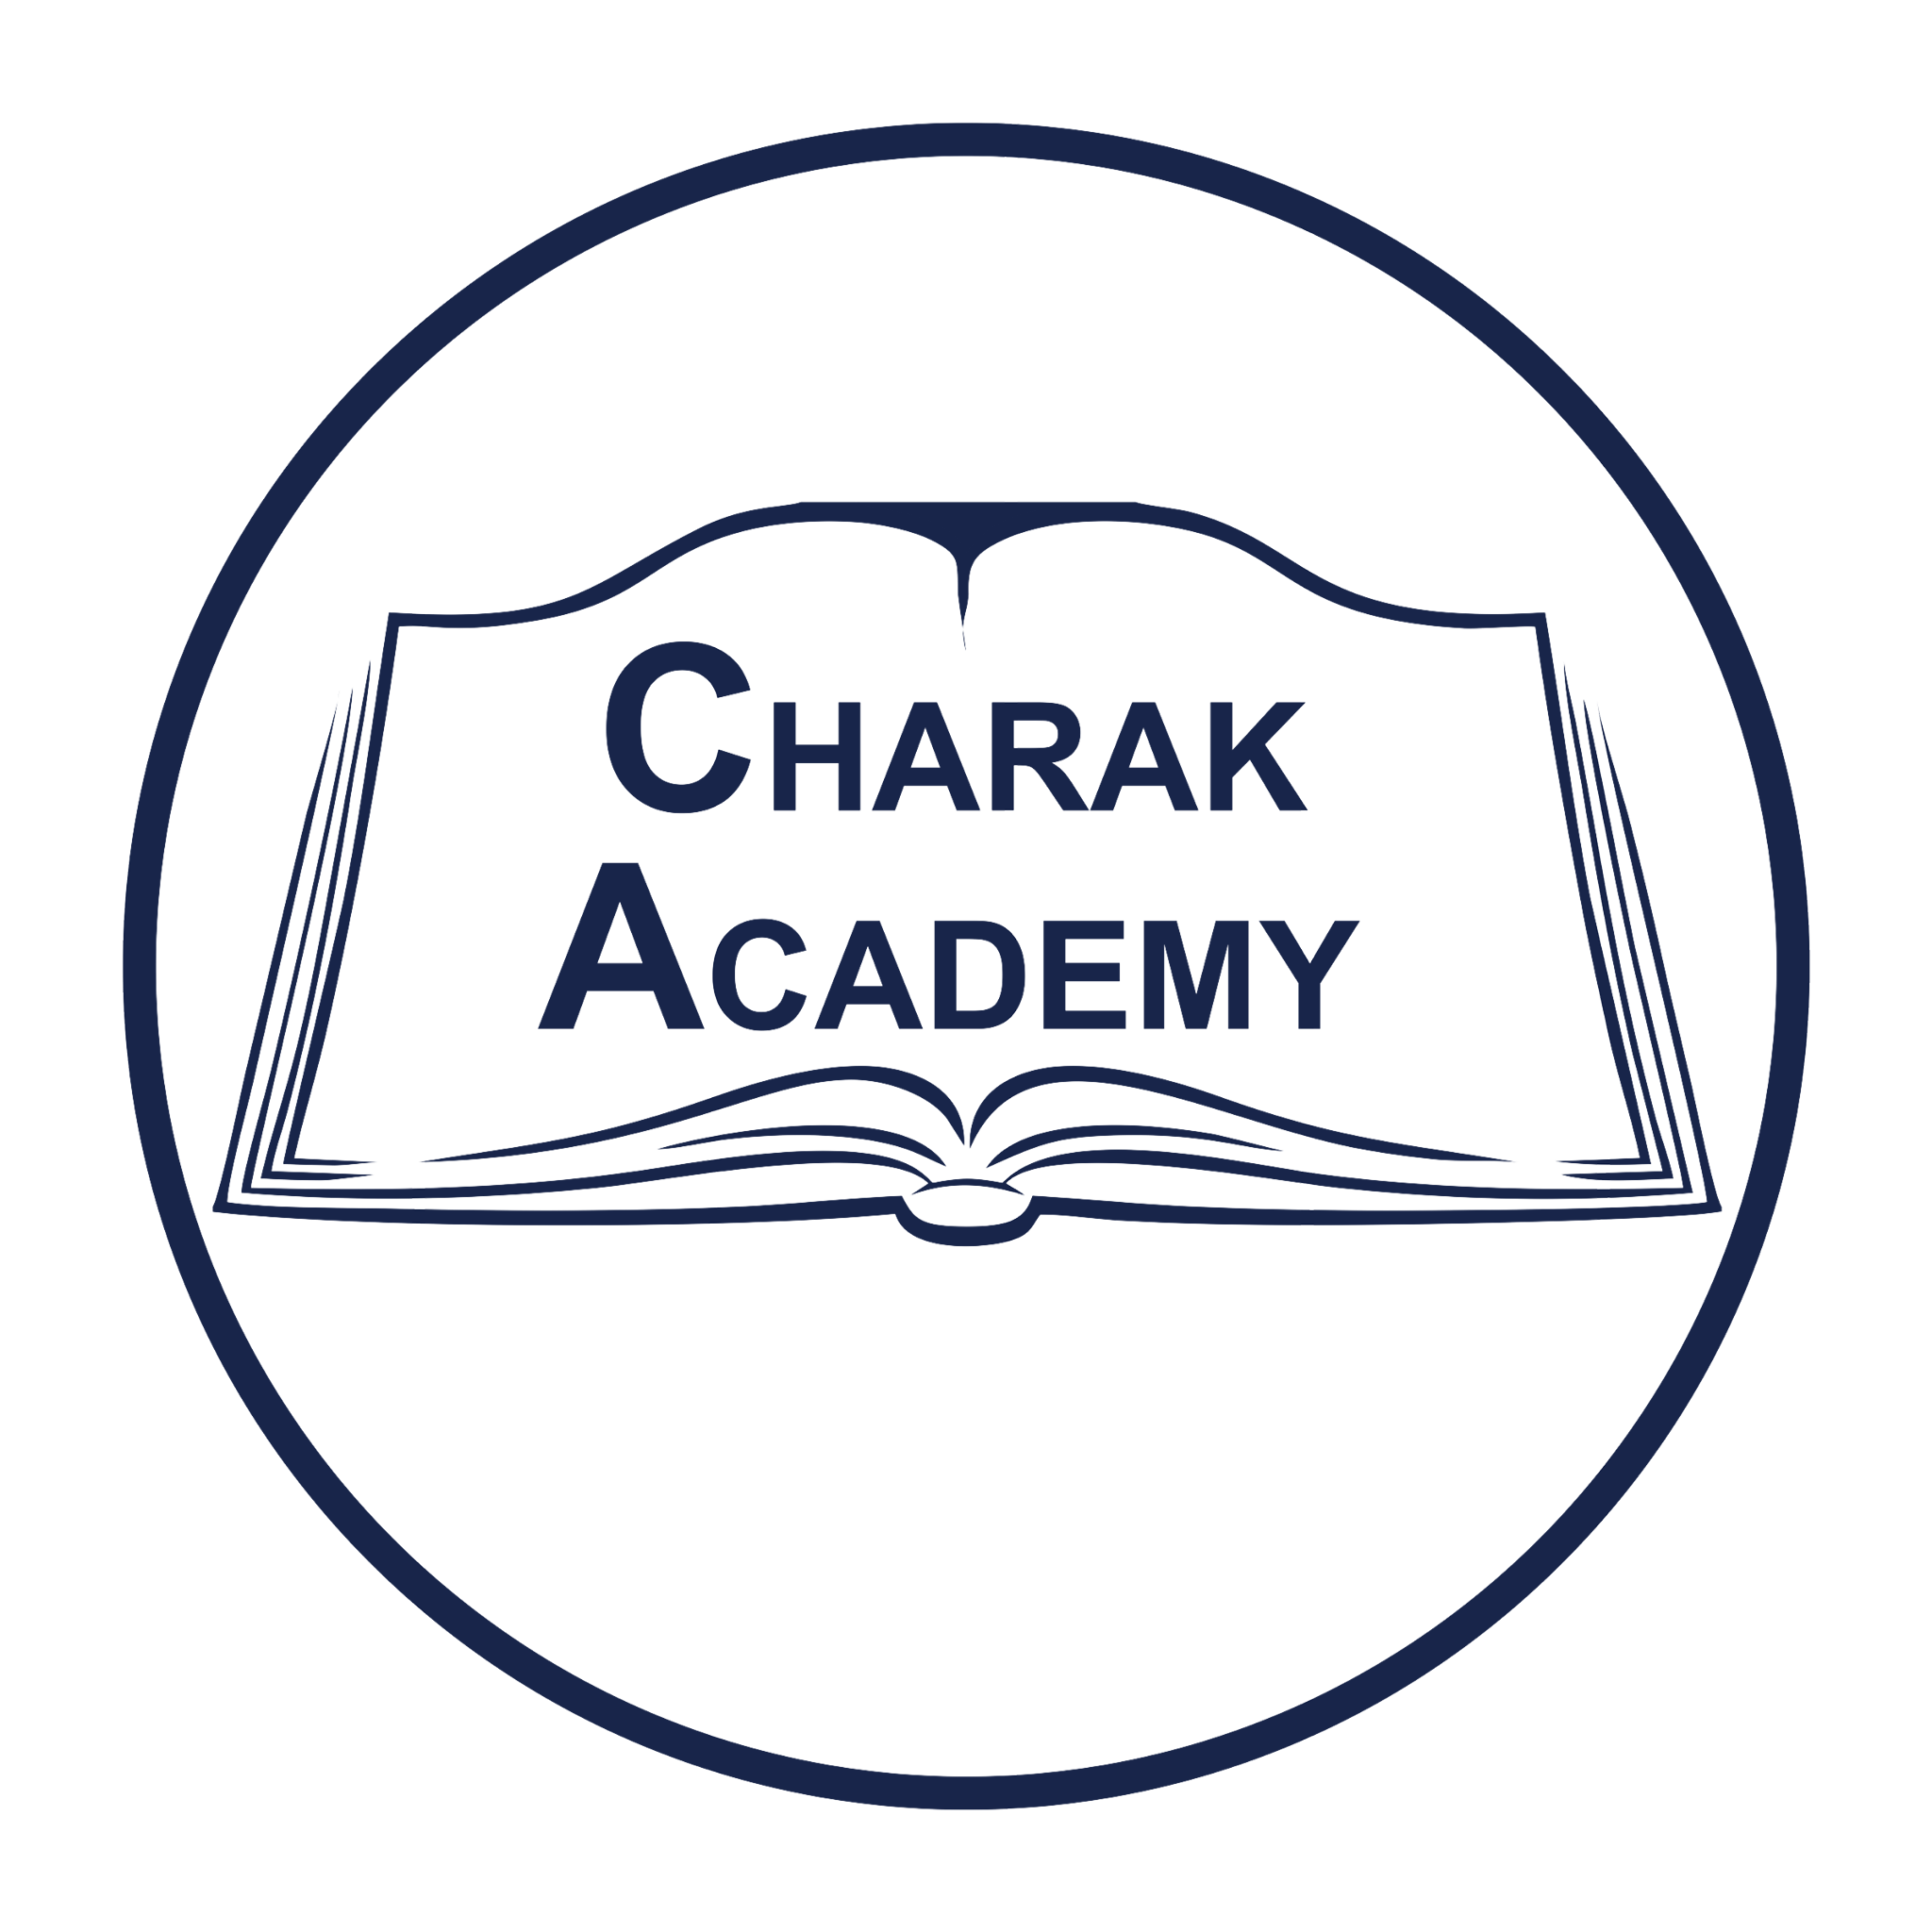 Charak academy